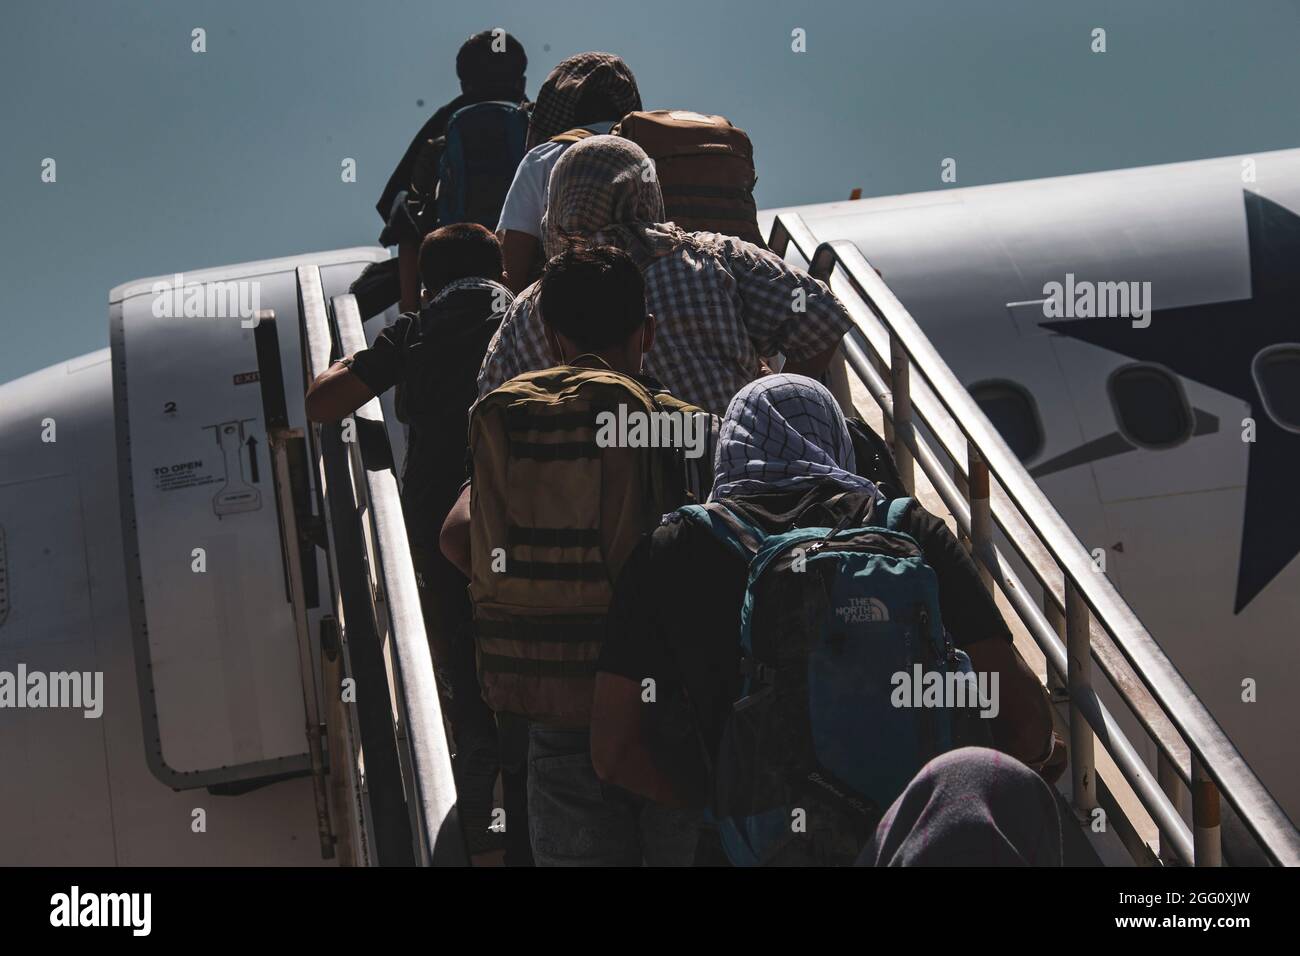 Gli evacuati salpano a bordo di un aereo per l'evacuazione all'Aeroporto Internazionale Hamid Karzai, Afghanistan, 25 agosto. I membri del servizio degli Stati Uniti stanno assistendo il Dipartimento di Stato con un'operazione DI evacuazione non combattente (NEO) in Afghanistan. (STATI UNITI Foto del corpo marino di CPL. Davis Harris) Foto Stock